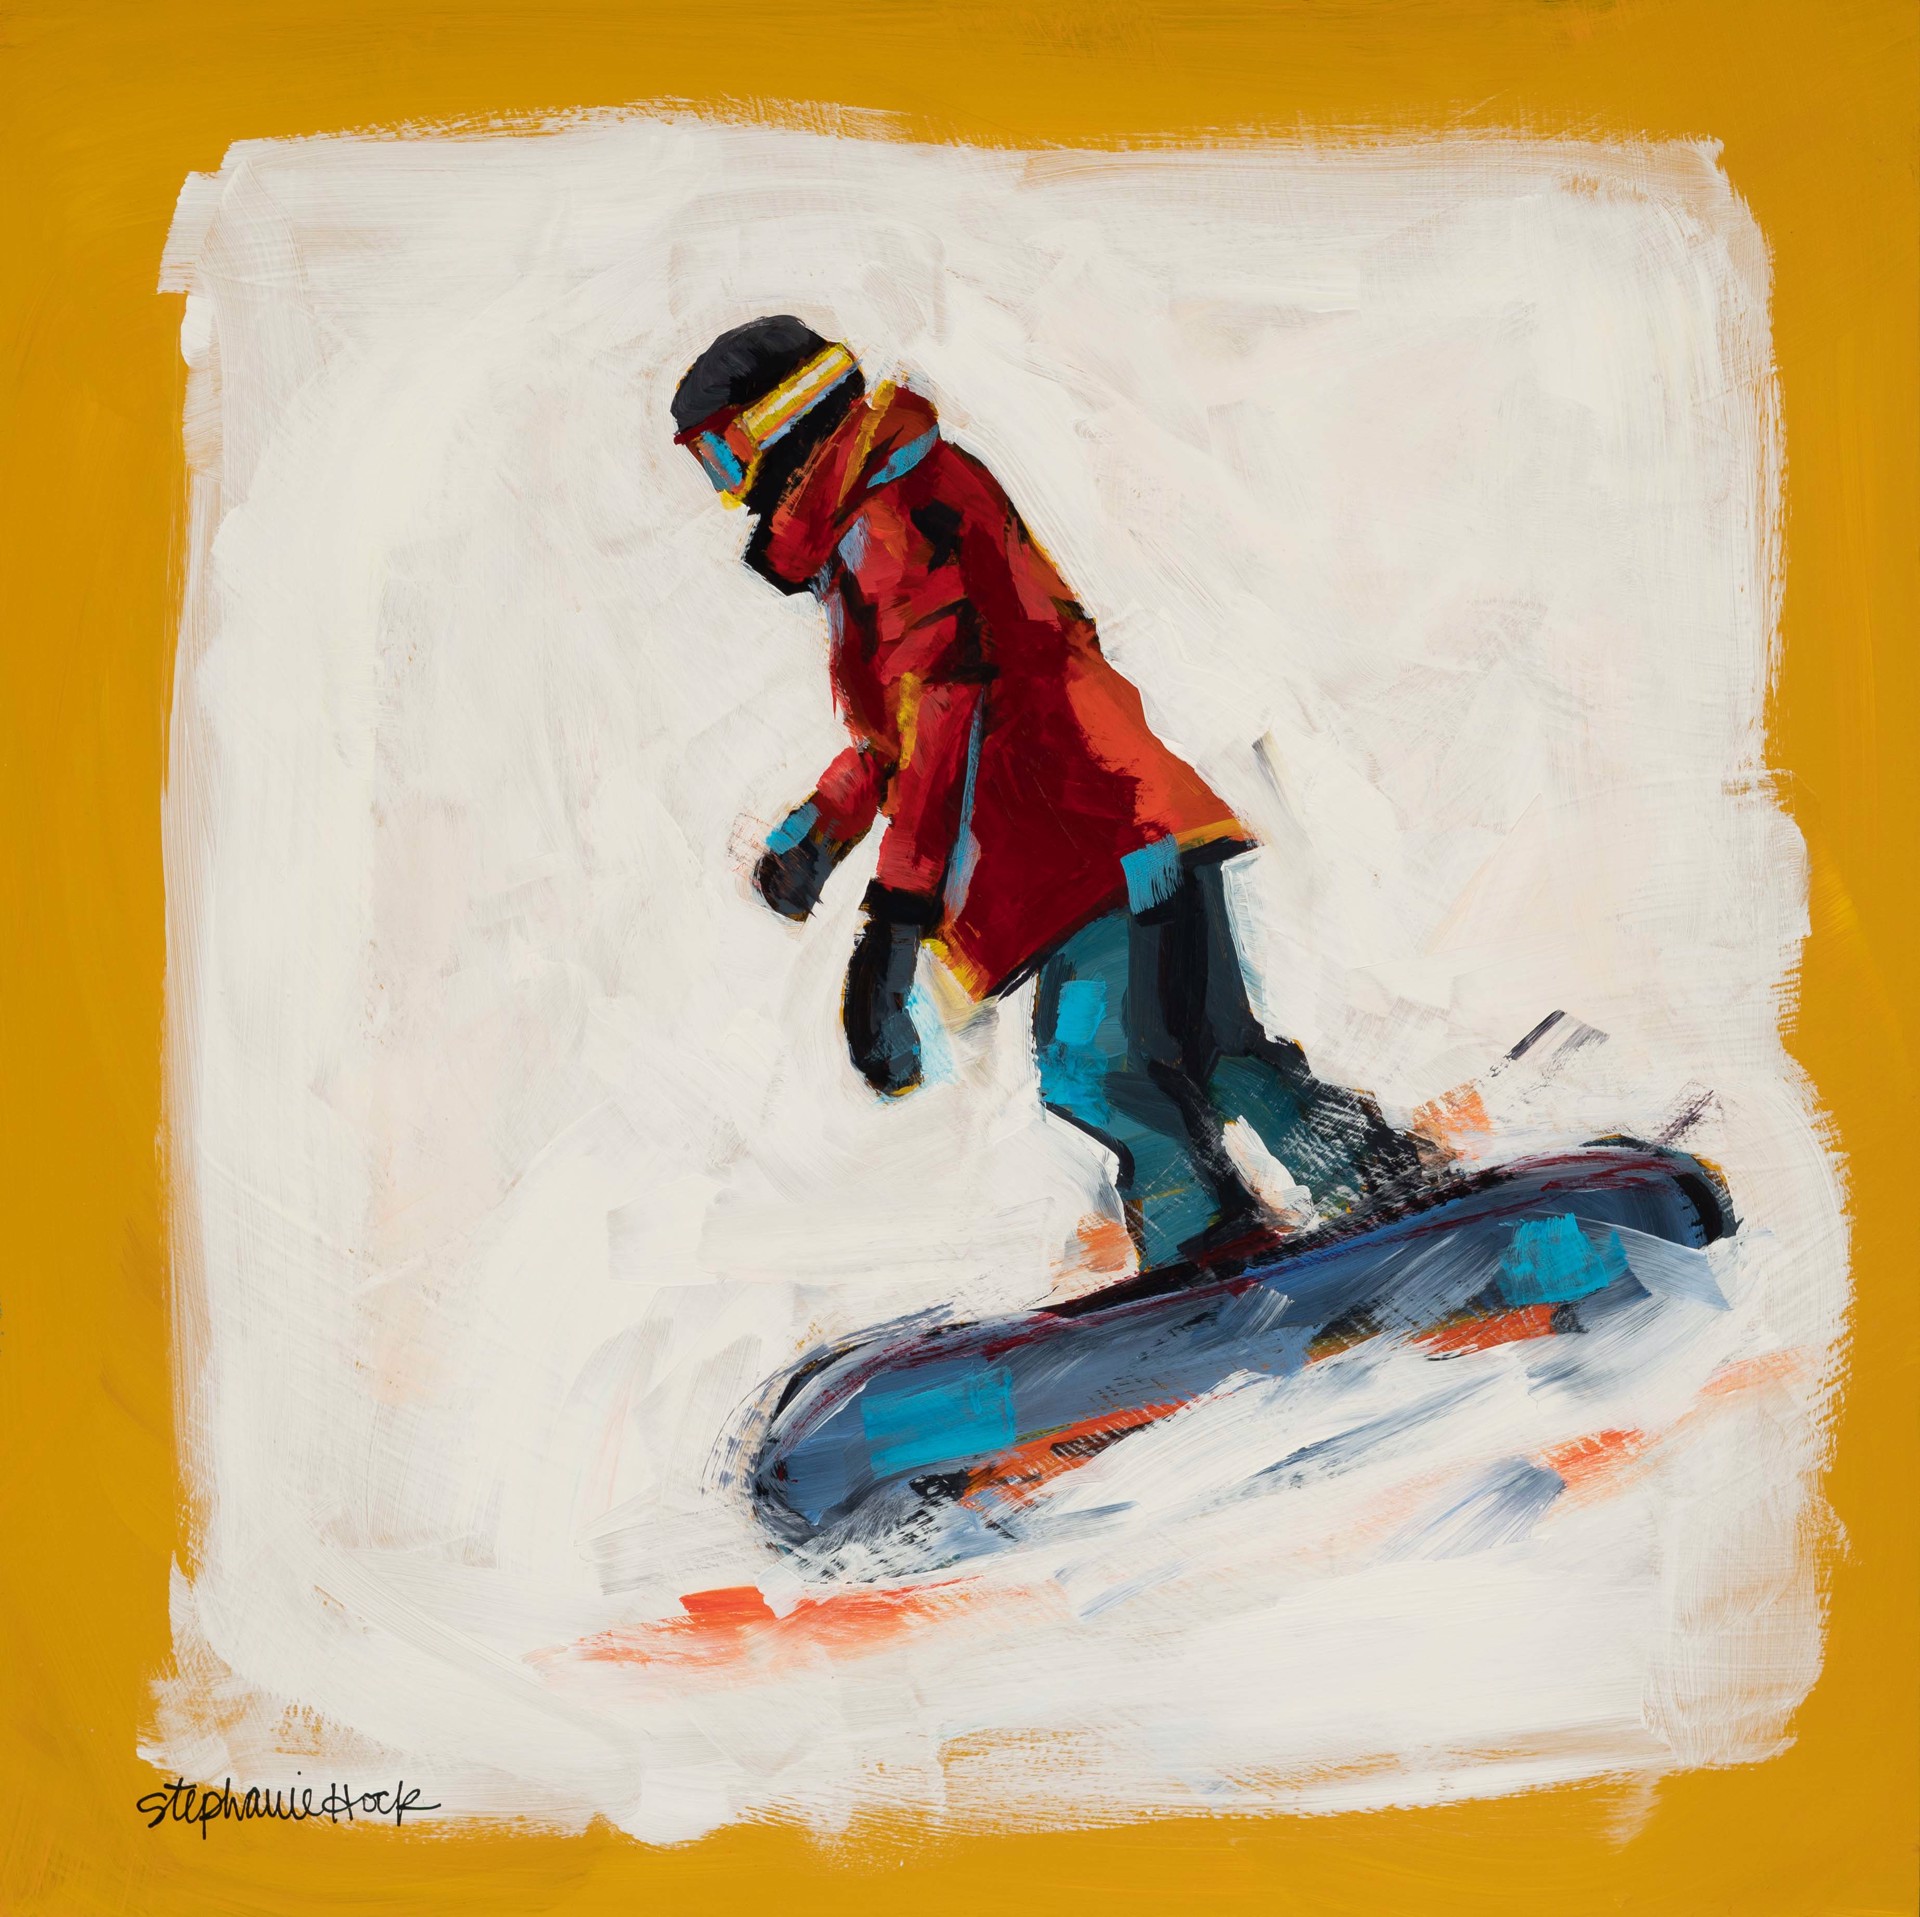 Yellow Skier by Stephanie Hock